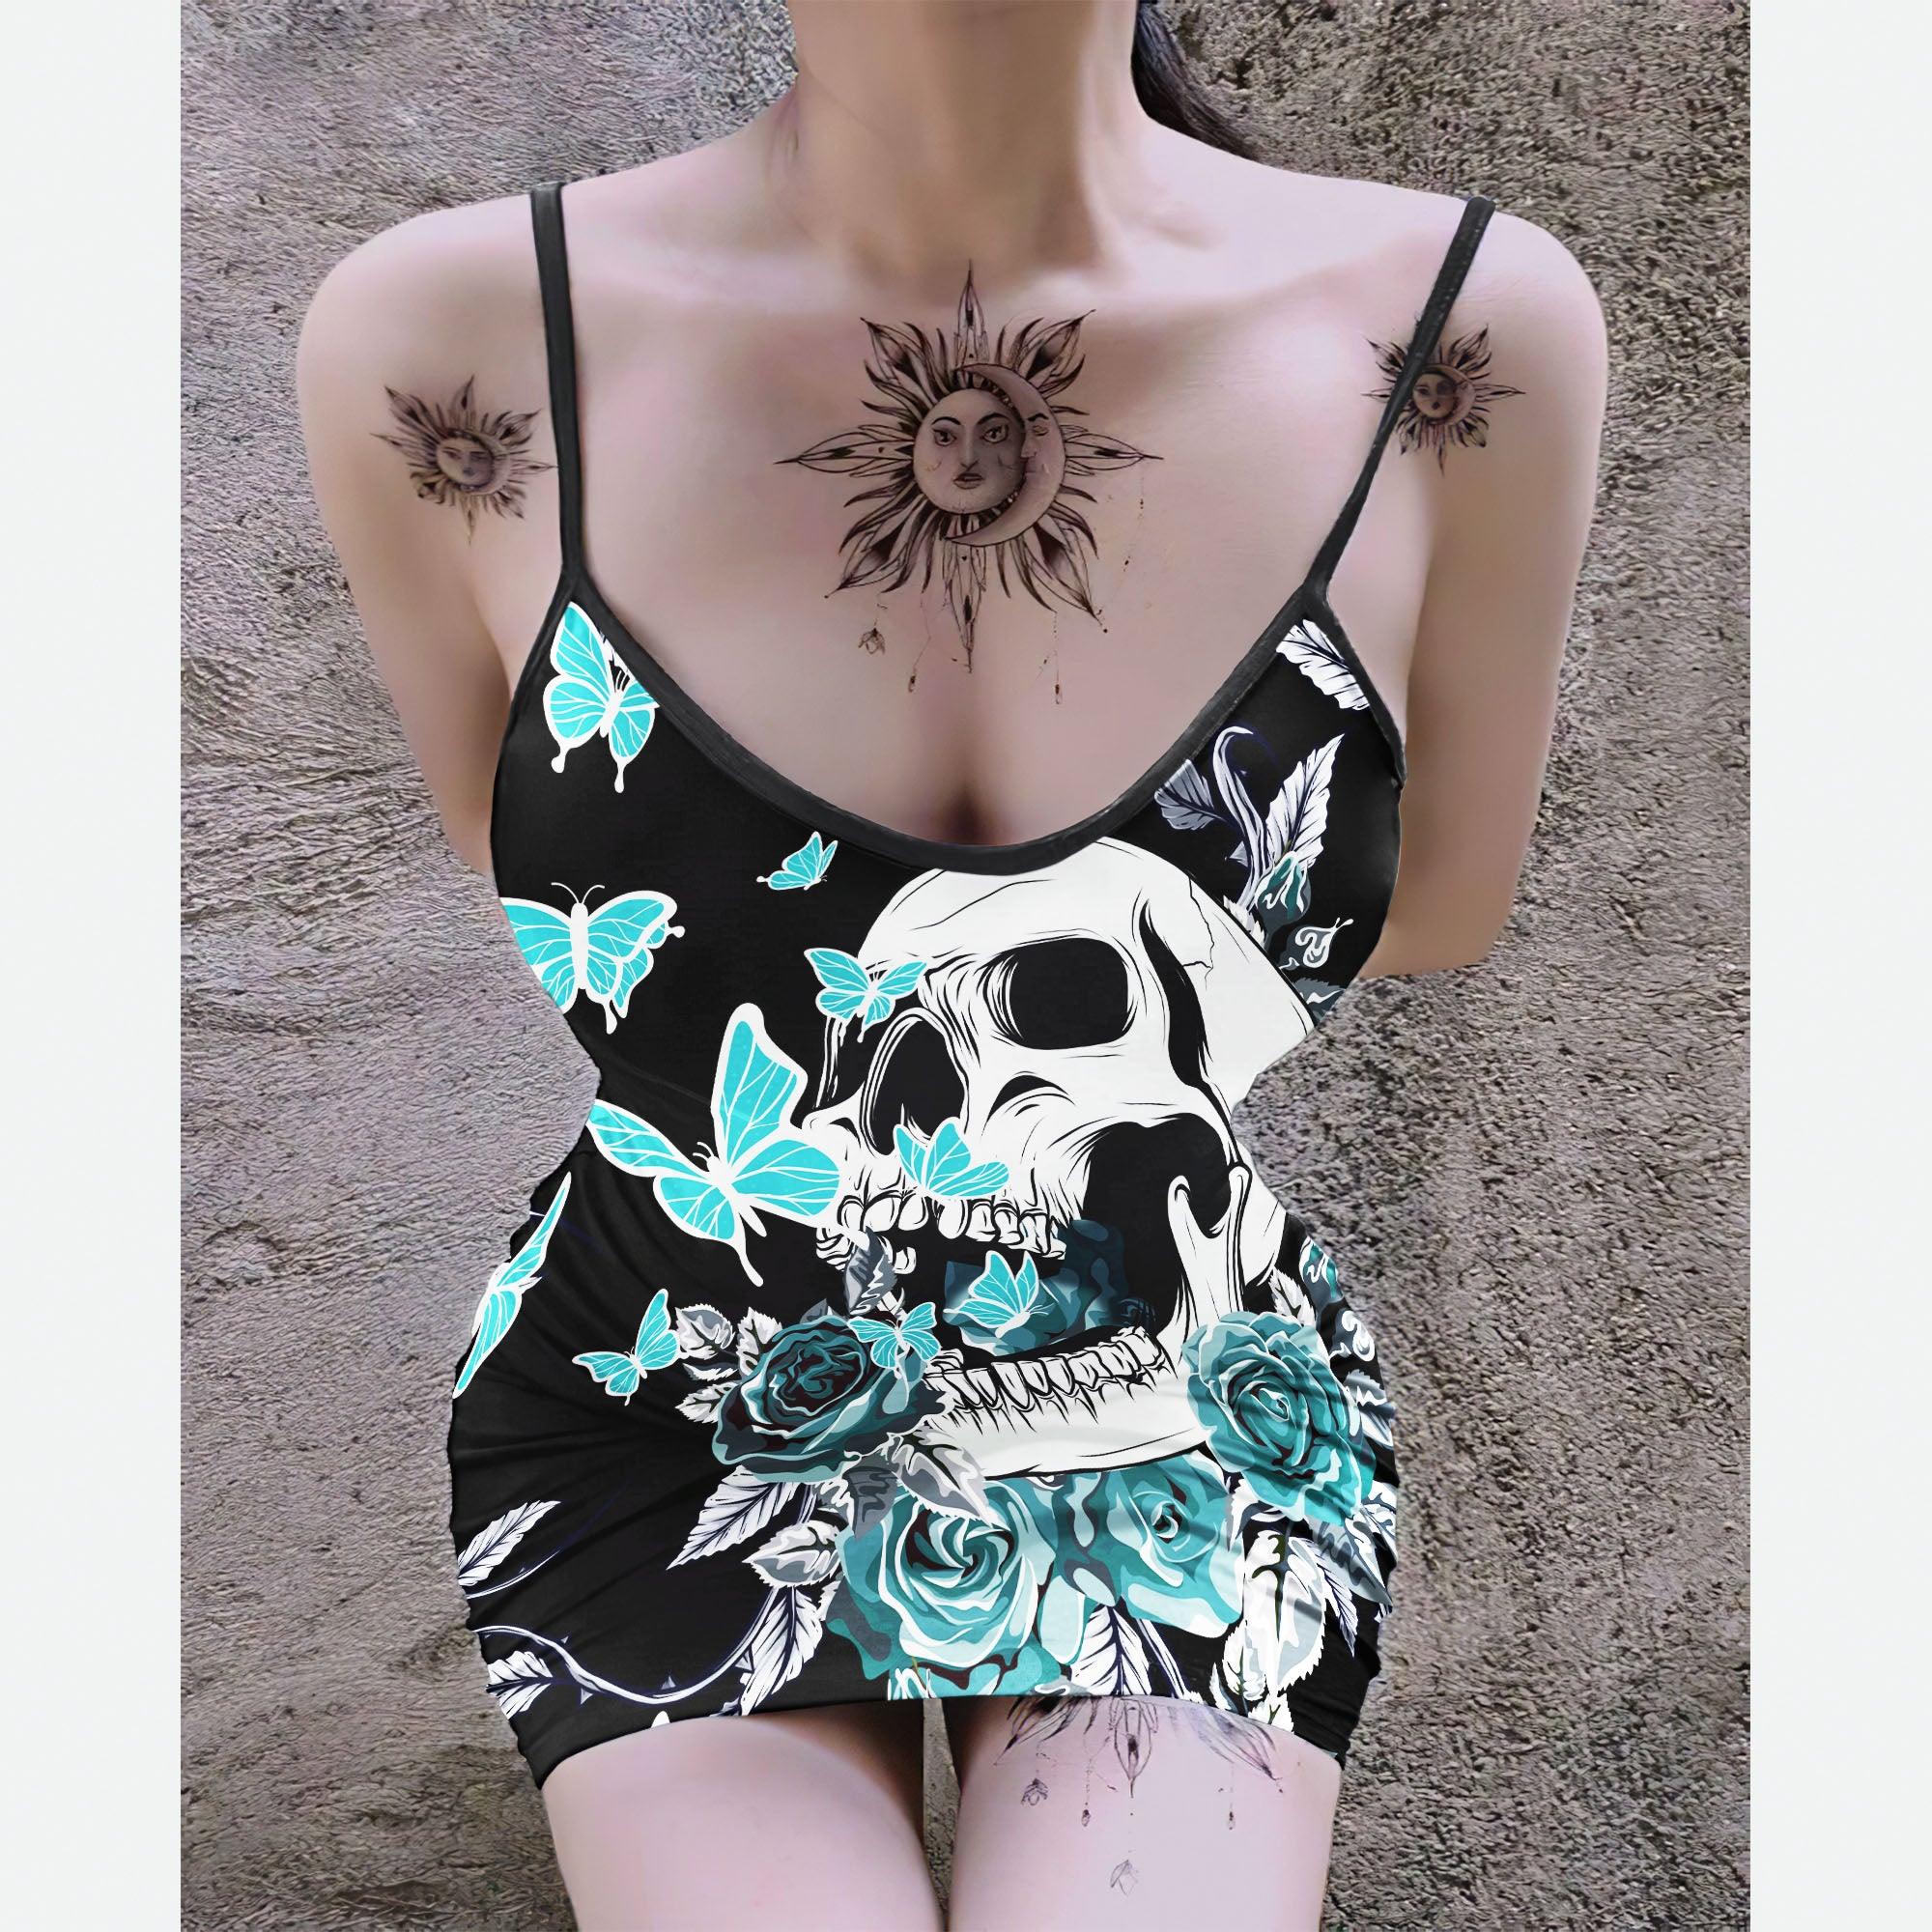 Turquoise Butterfly Skull Printed Body Dress, Naughty Sleeveless Minidress For Women-Wonder Skull